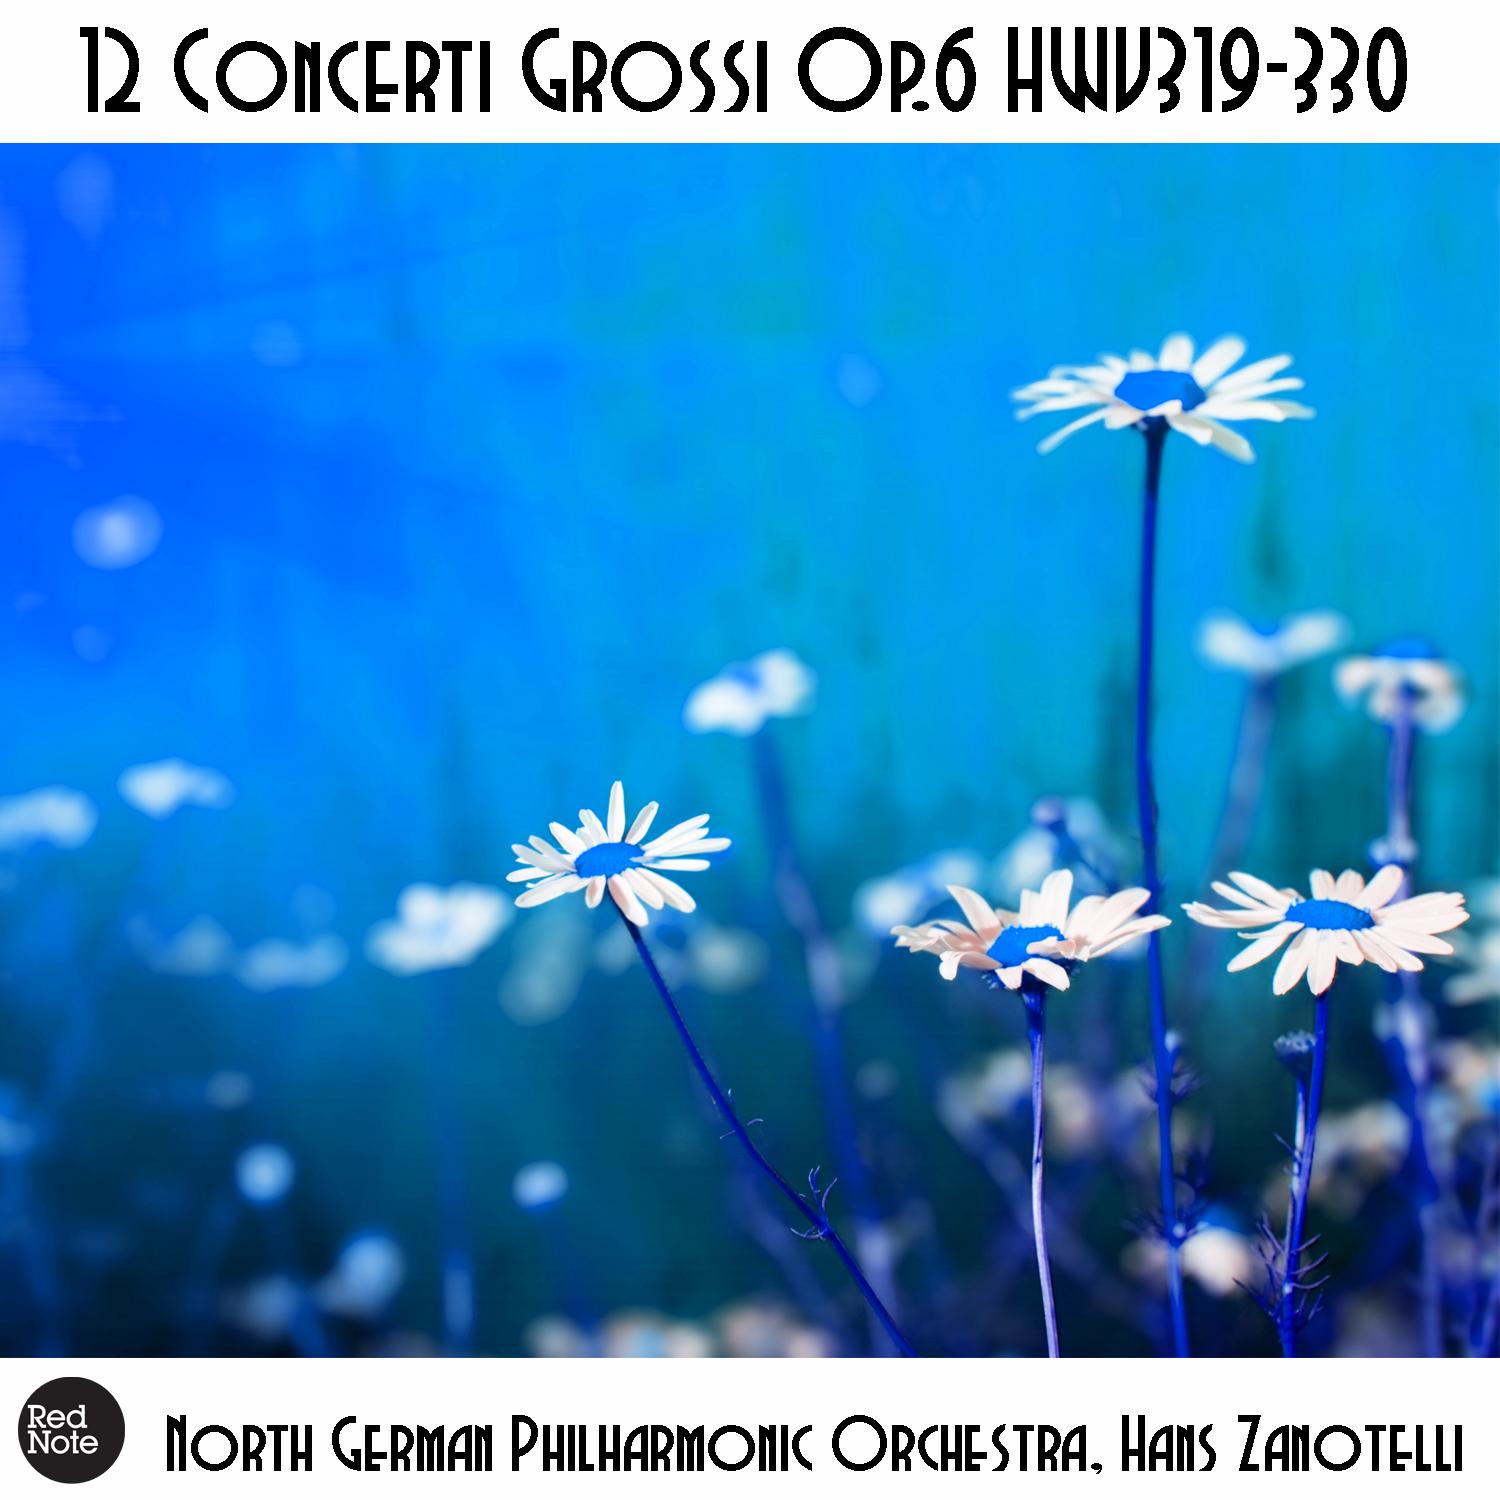 Concerti Grossi No. 2, Op. 6 HWV320: III. Largo